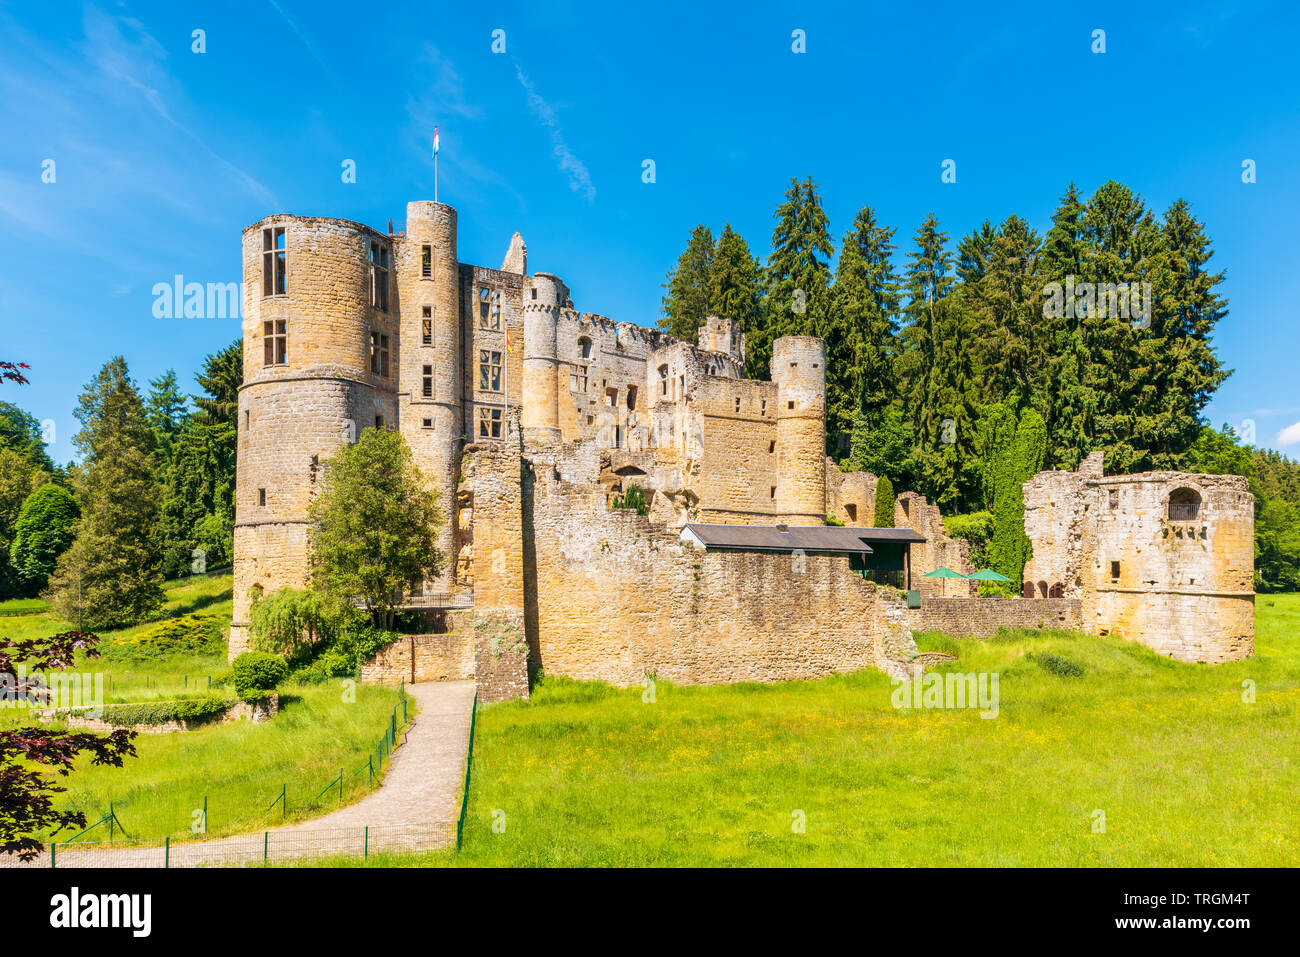 Das Alte Schloss von Beaufort in Beaufort, Luxemburg. Es besteht aus den Ruinen einer mittelalterlichen Festung und stammt aus dem 11. Jahrhundert. Stockfoto